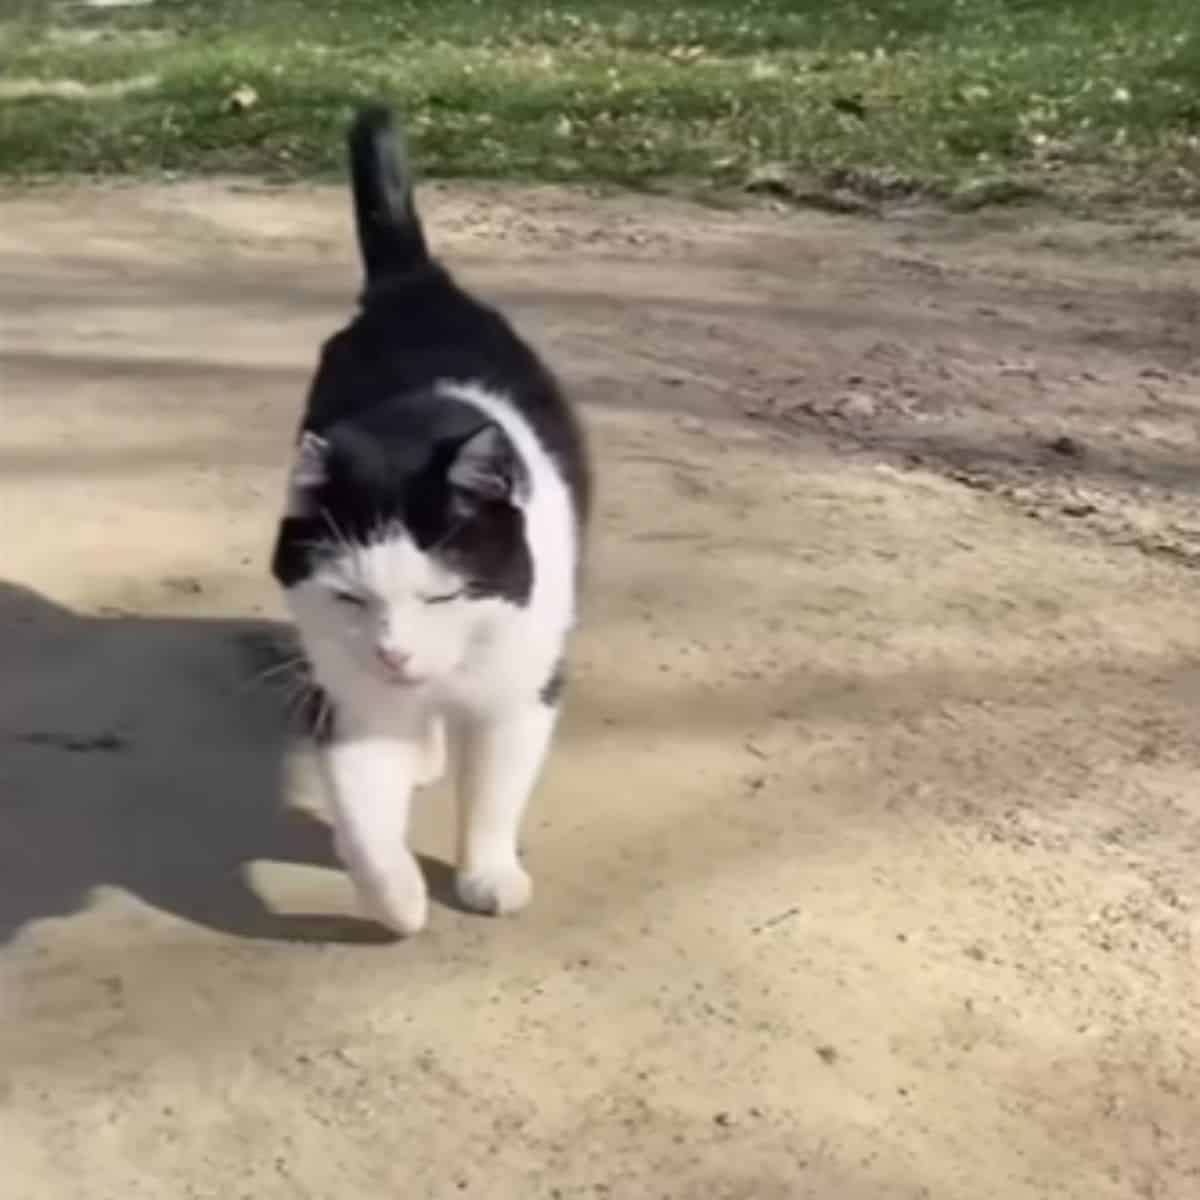 a cat walks down the street